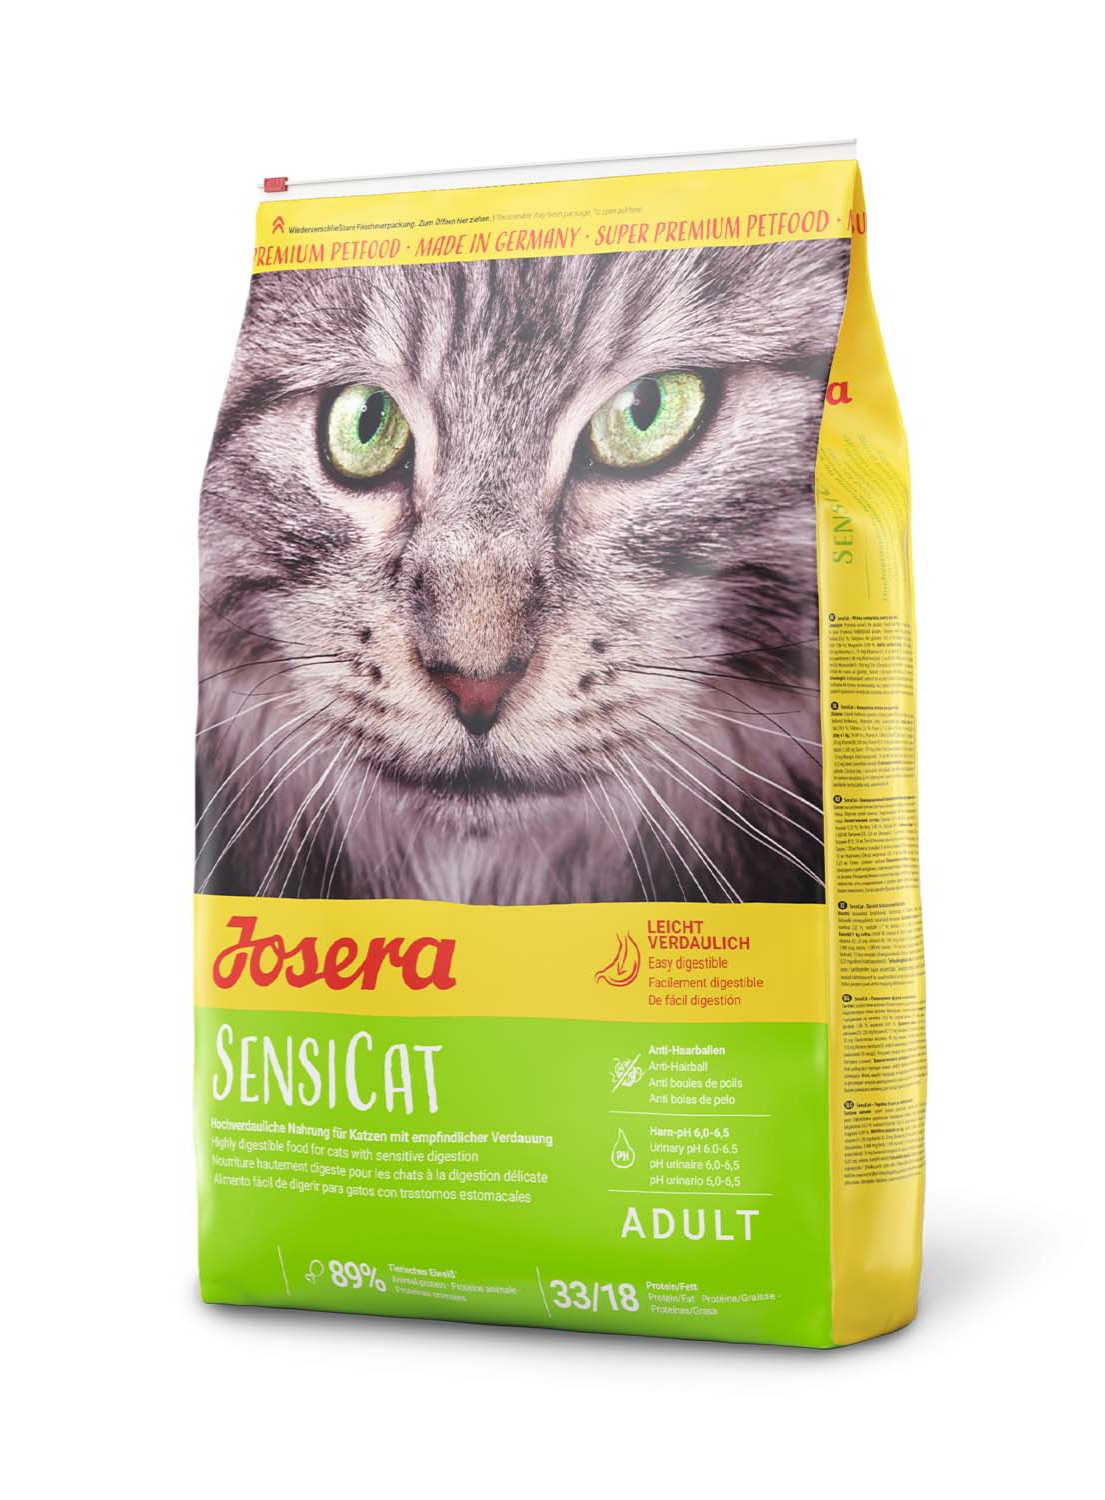 غذای خشک گربه جوسرا سنسی کت Josera Sensicat وزن ۲ کیلوگرم